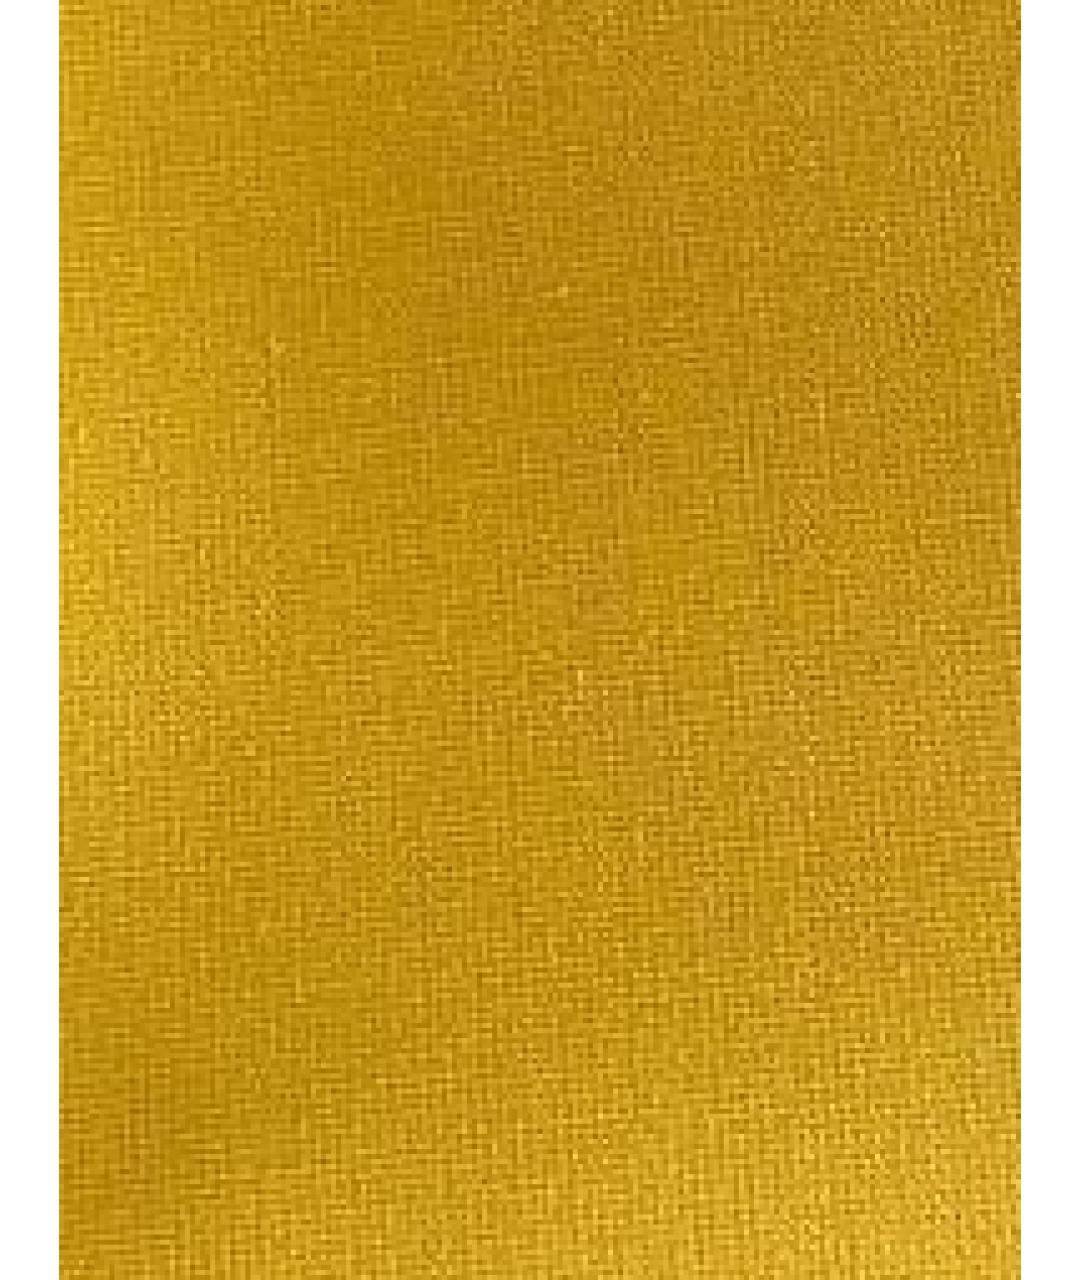 HERMES PRE-OWNED Желтая тканевая сумка через плечо, фото 3